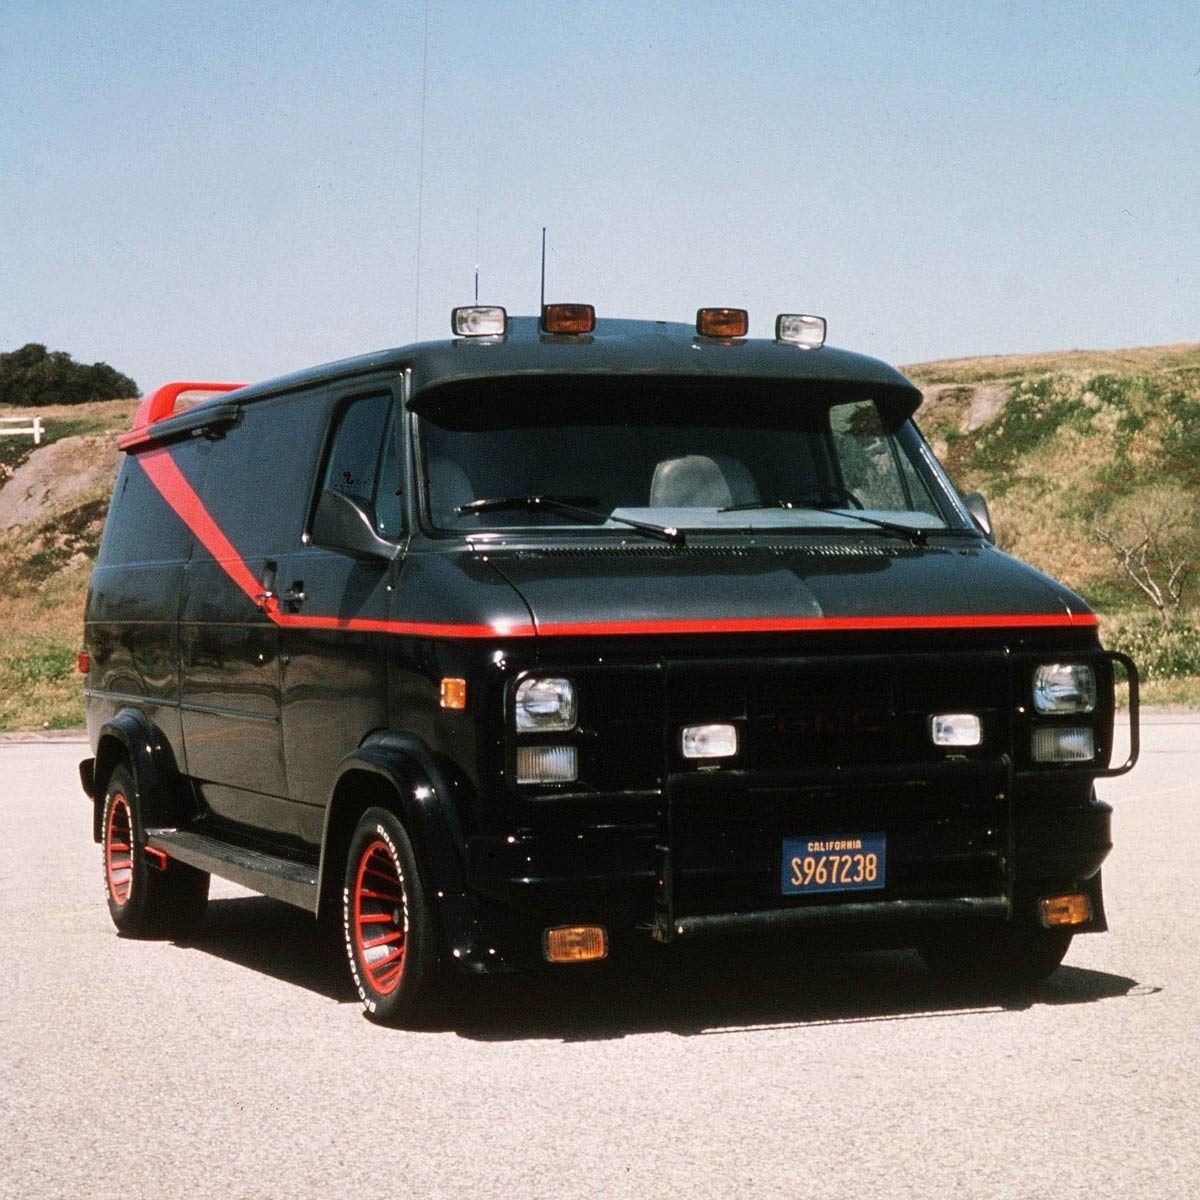 black van with red stripe